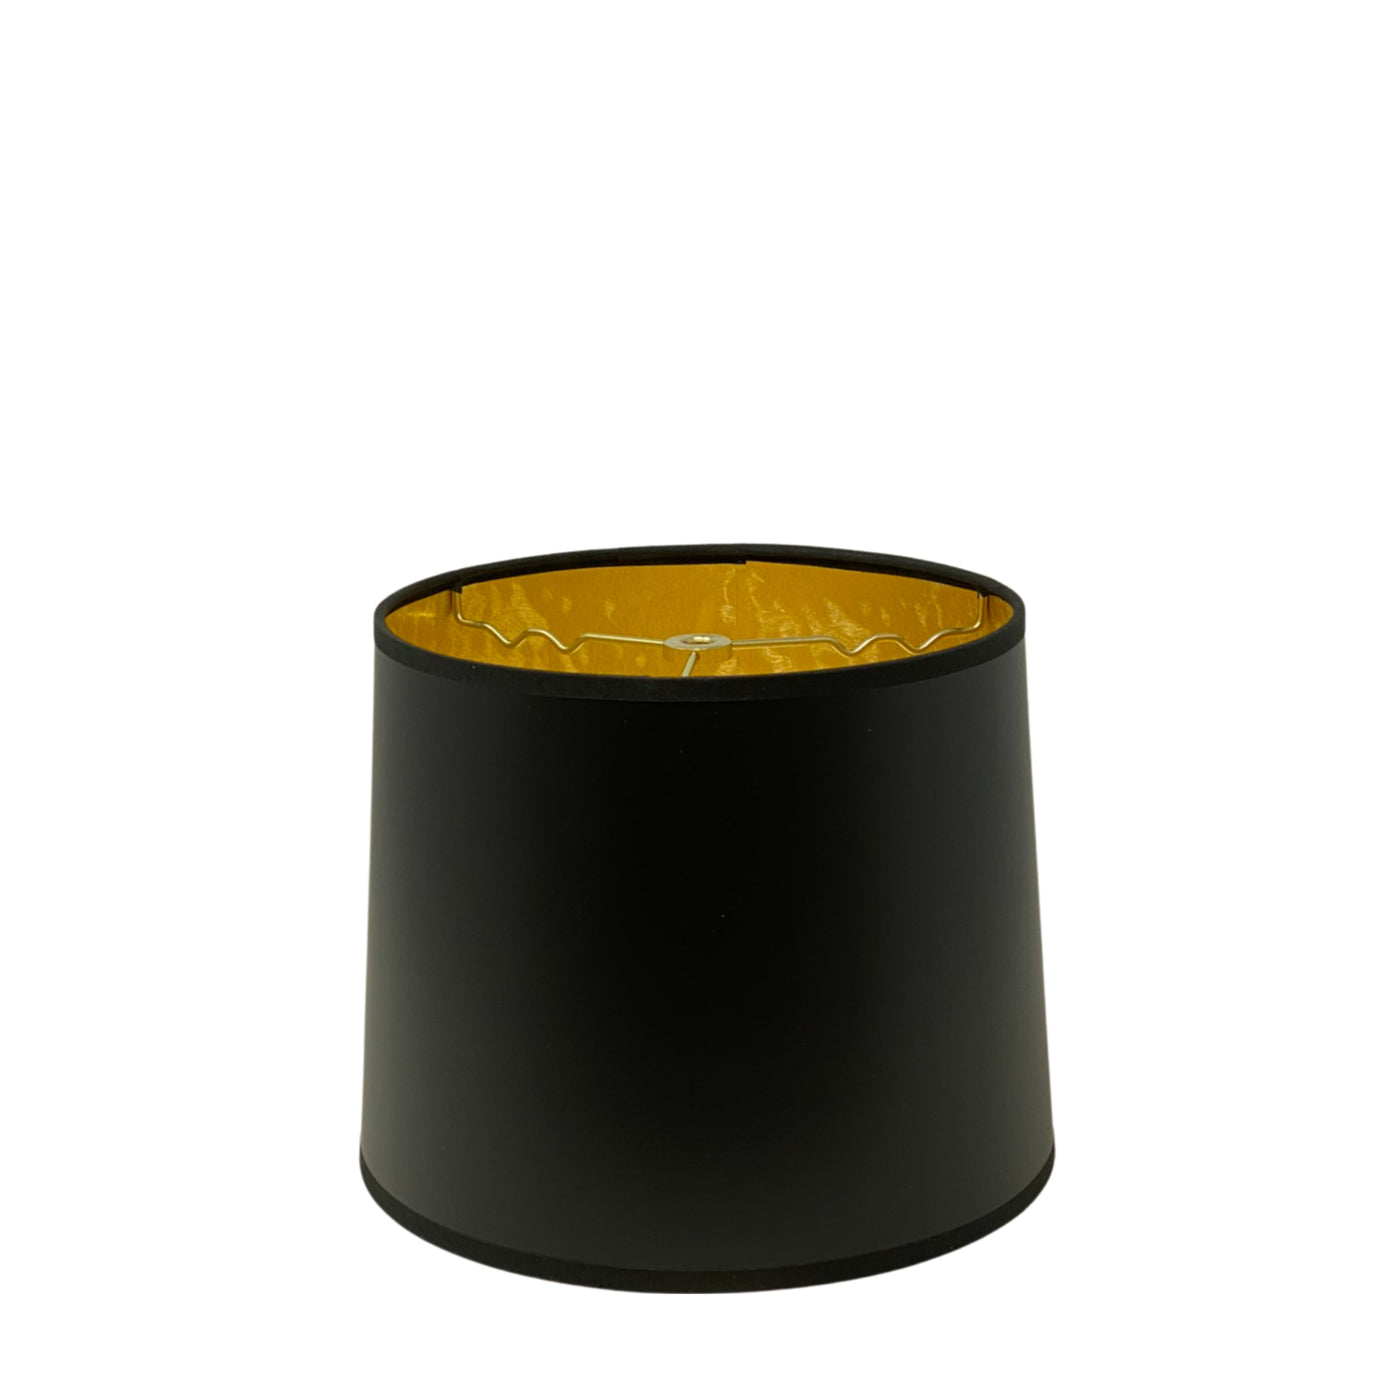 Black Retro Drum Lampshade with Gold Interior